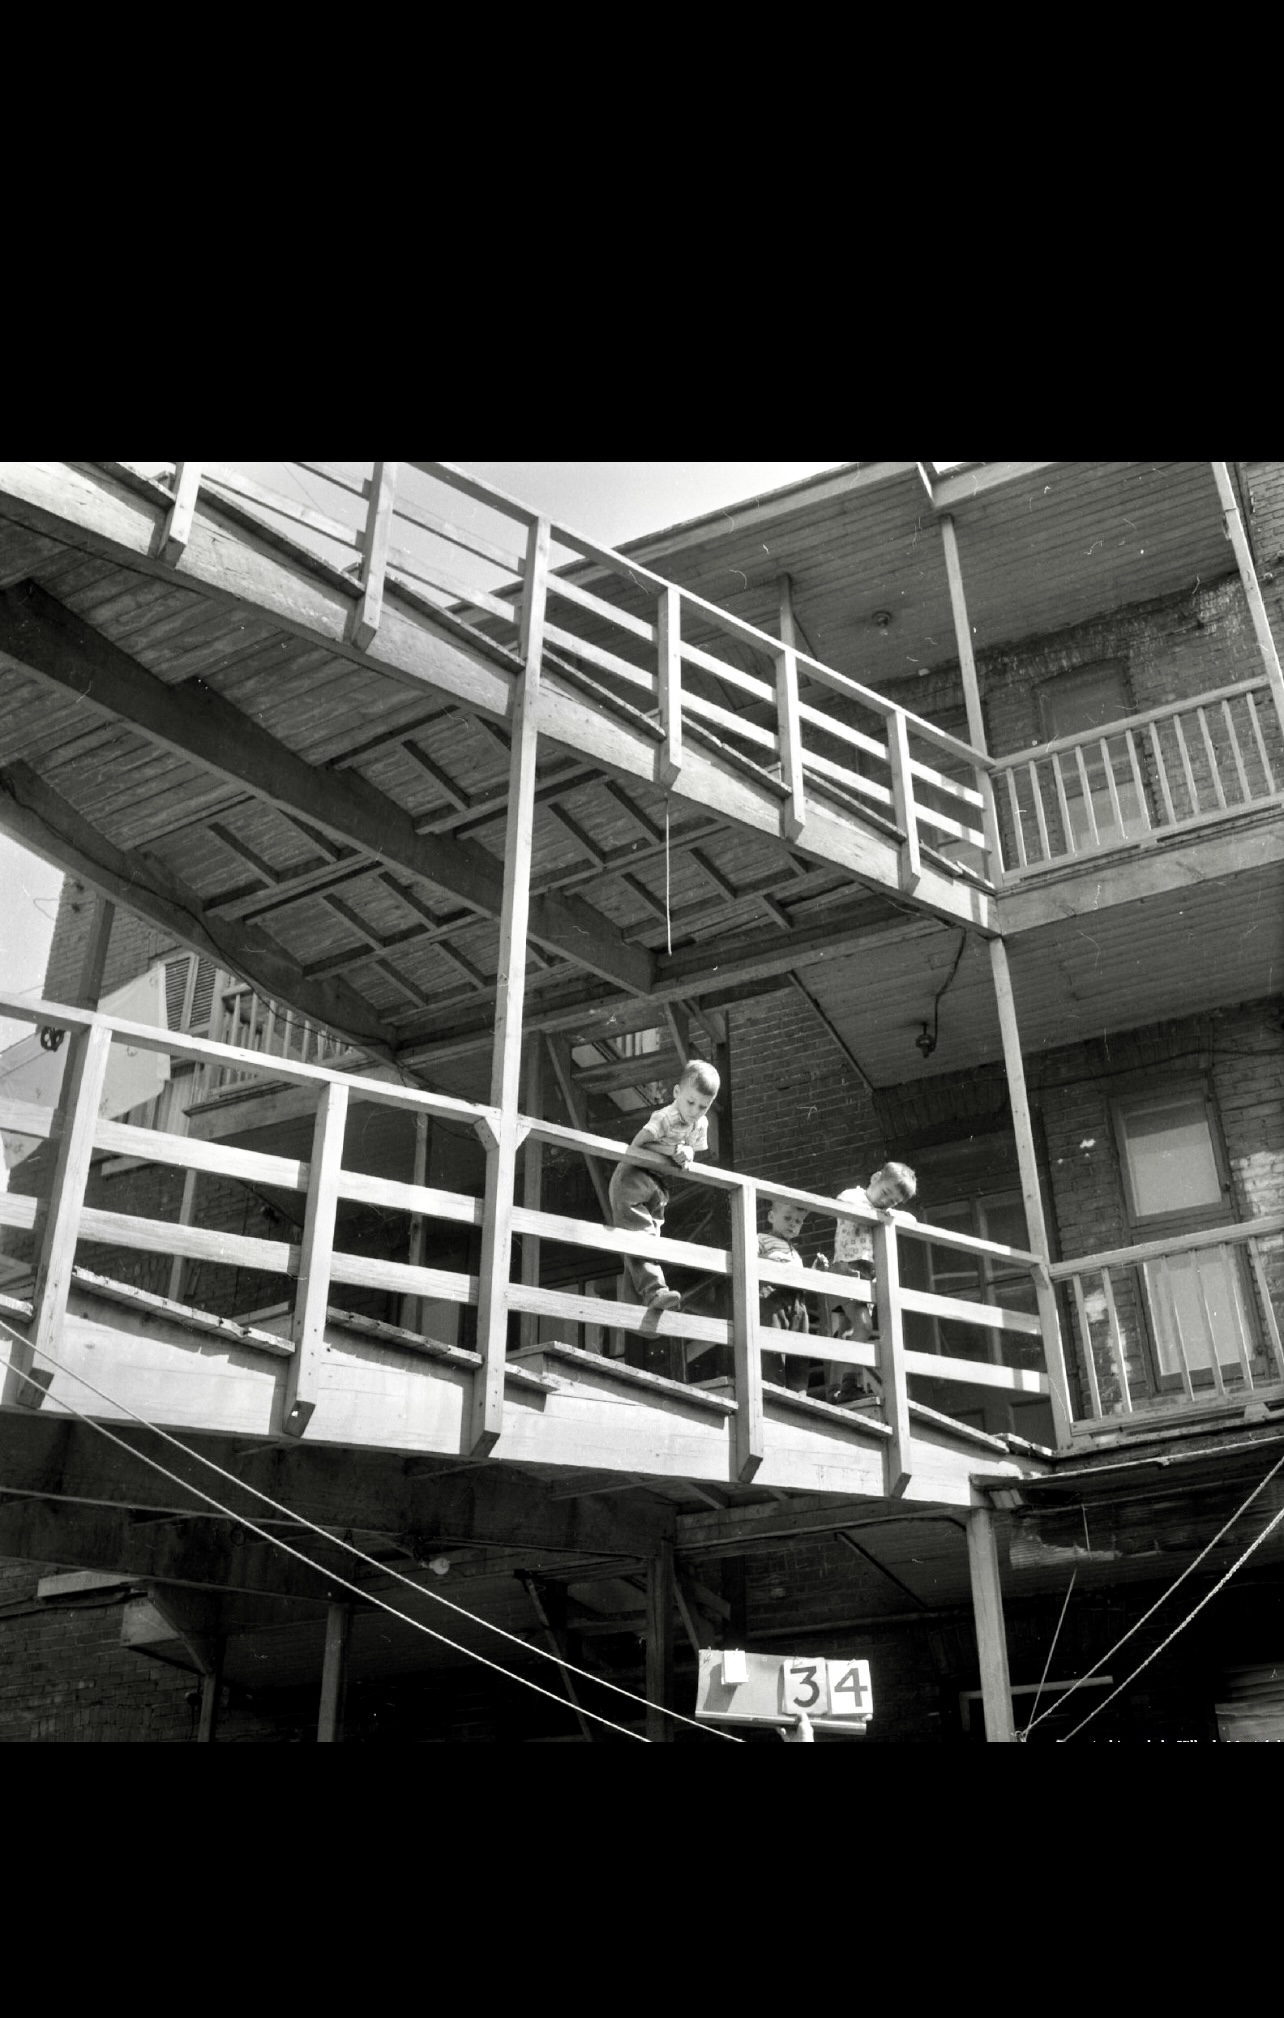 Une photo en noir et blanc d'un homme faisant du skateboard sur un balcon dans le style de "La marche gymnastique sociale II".